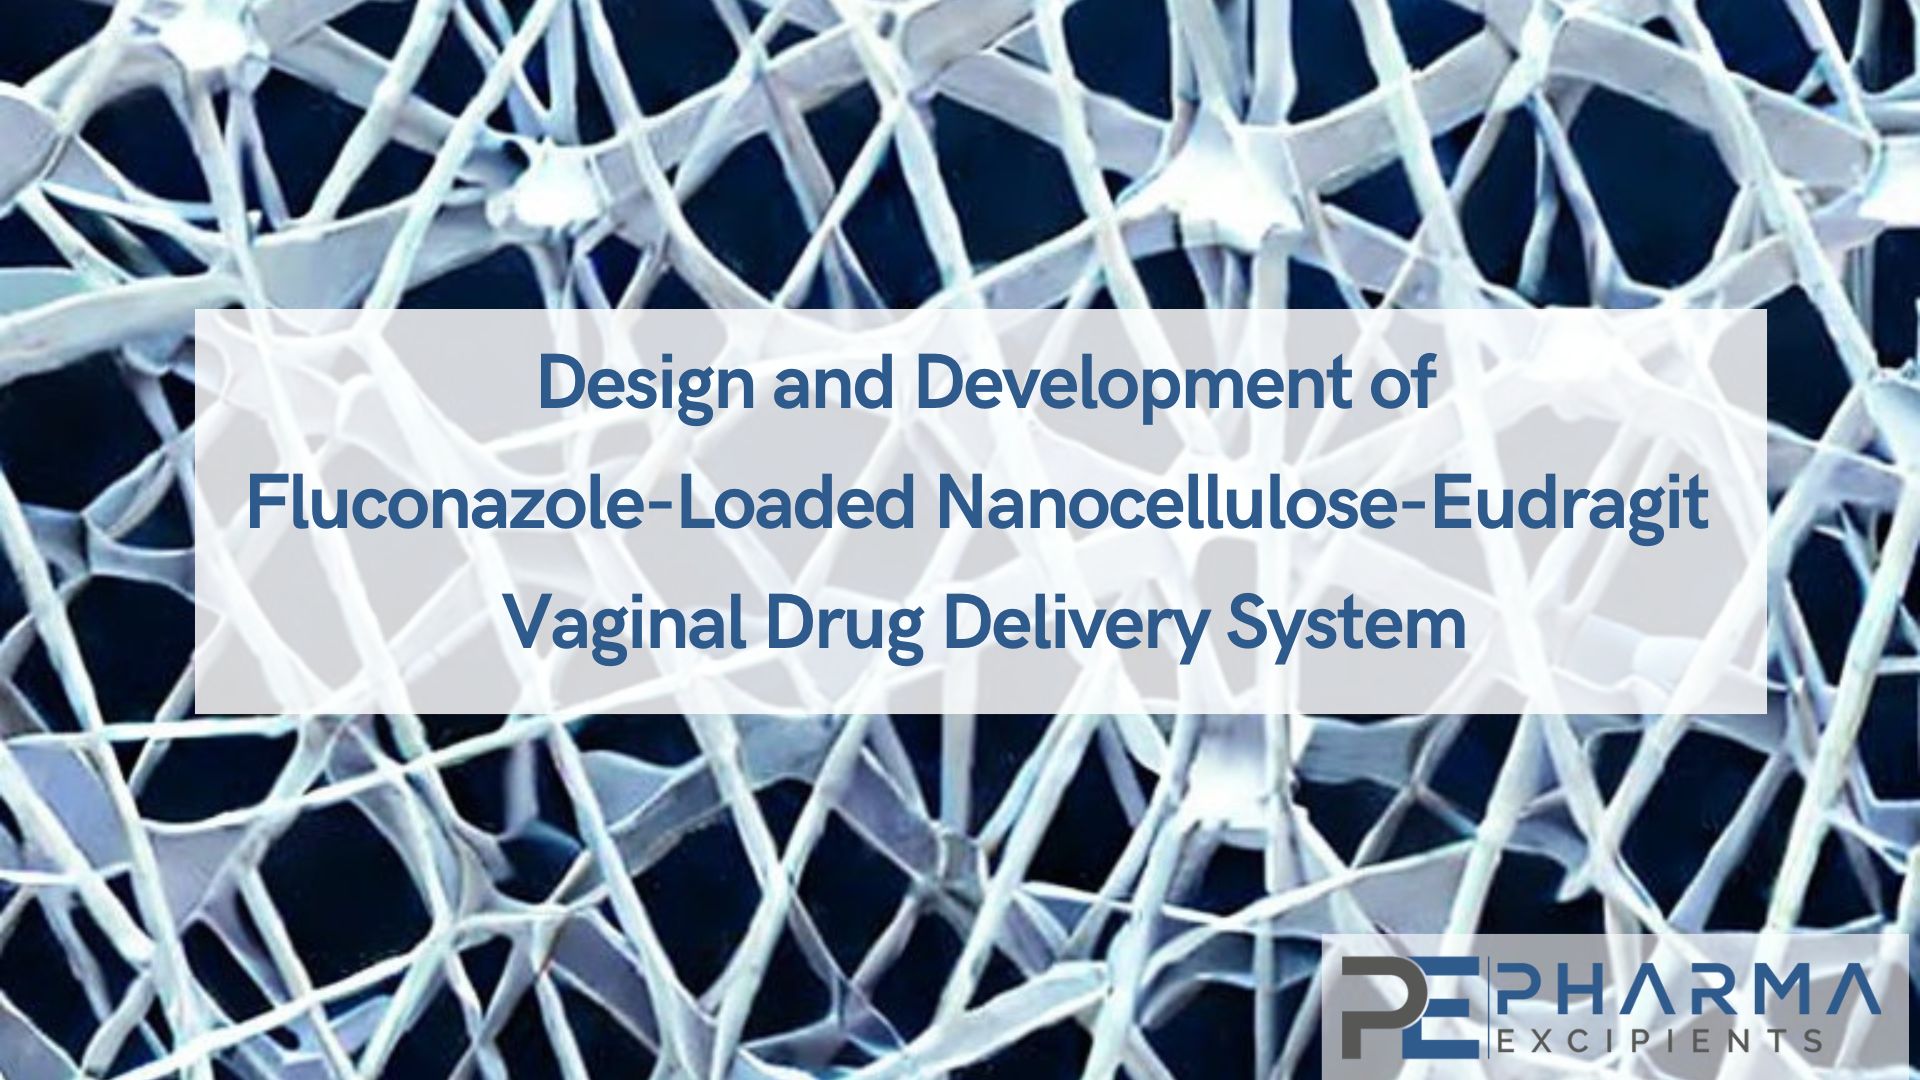 Design and Development of Fluconazole-Loaded Nanocellulose-Eudragit Vaginal Drug Delivery System